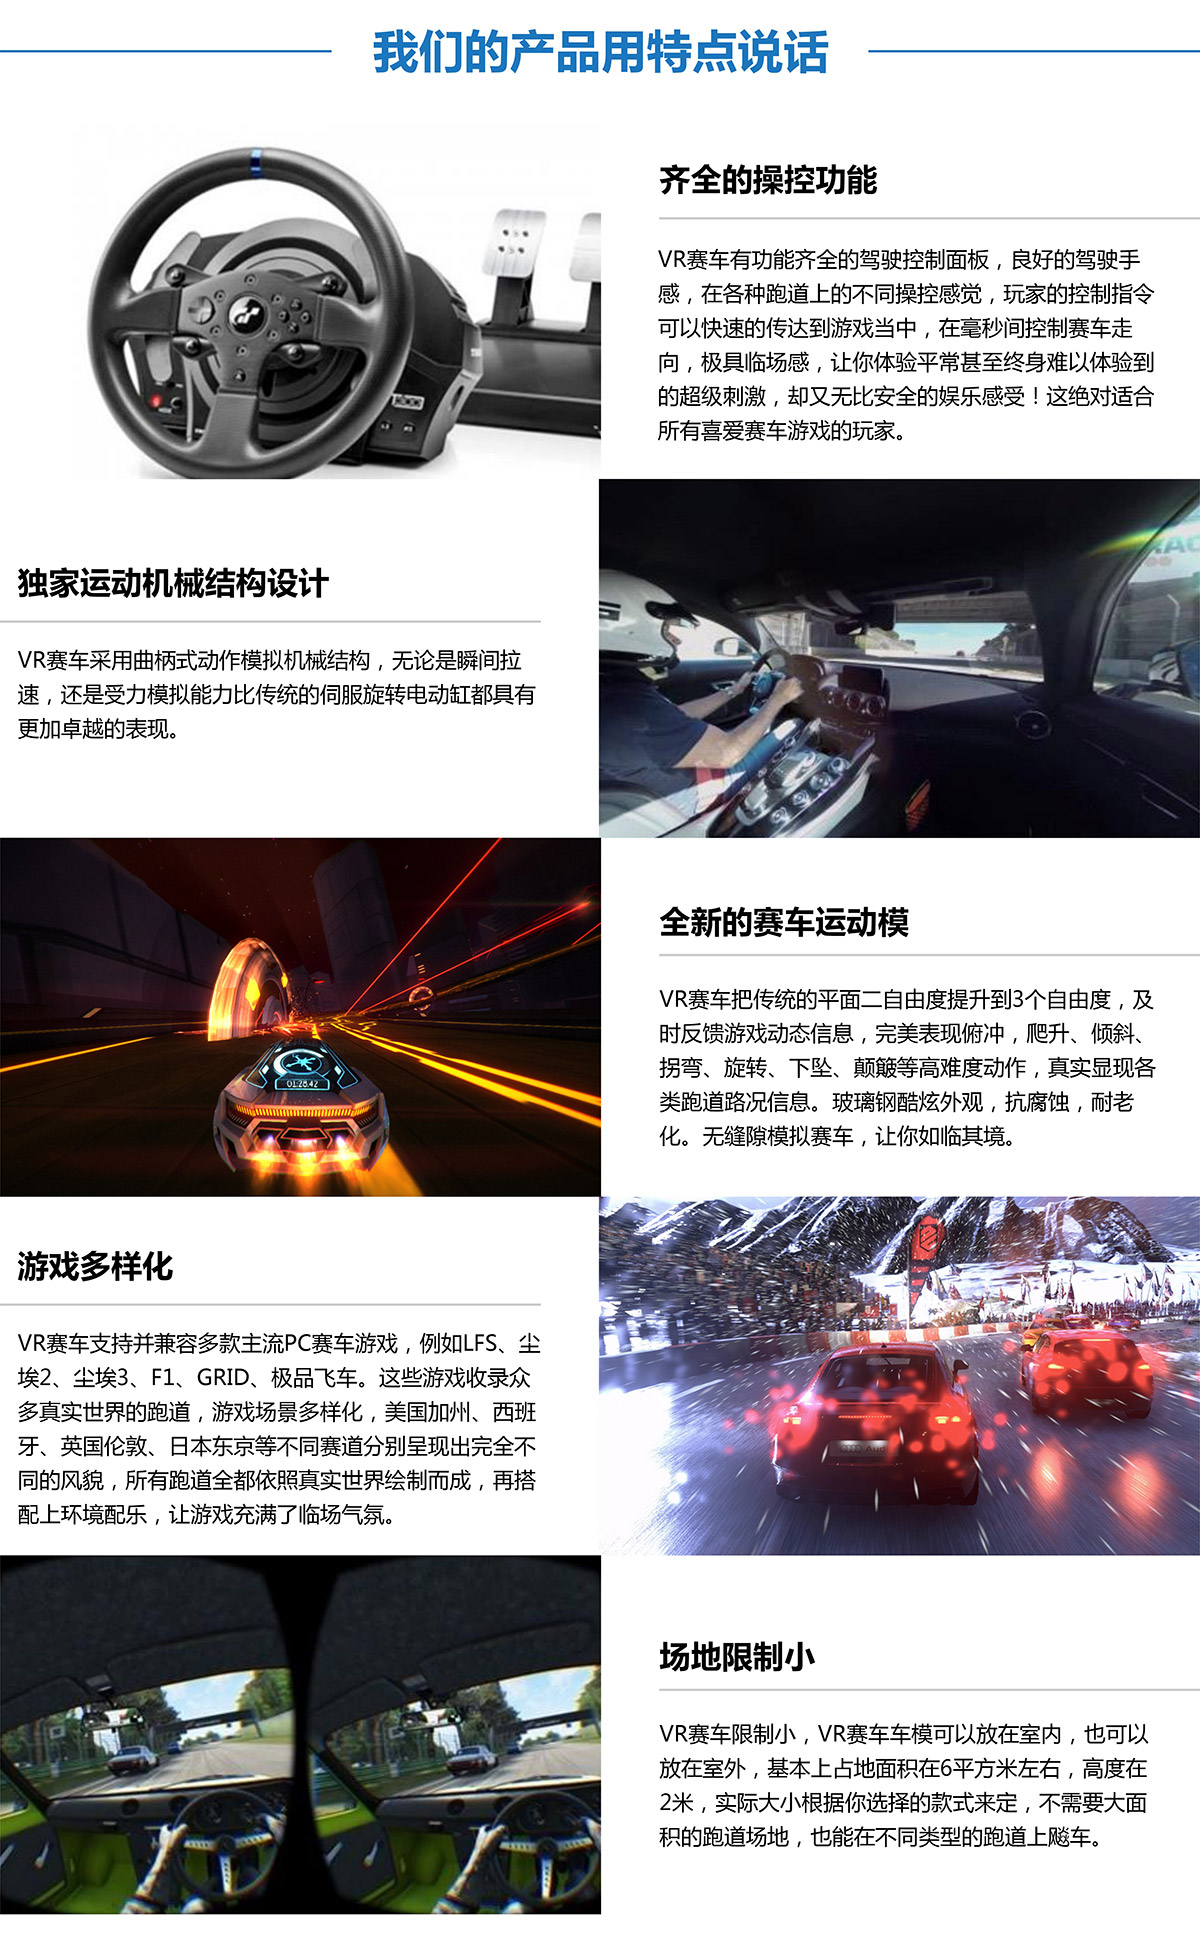 安全体验虚拟VR赛车产品用特点说话.jpg